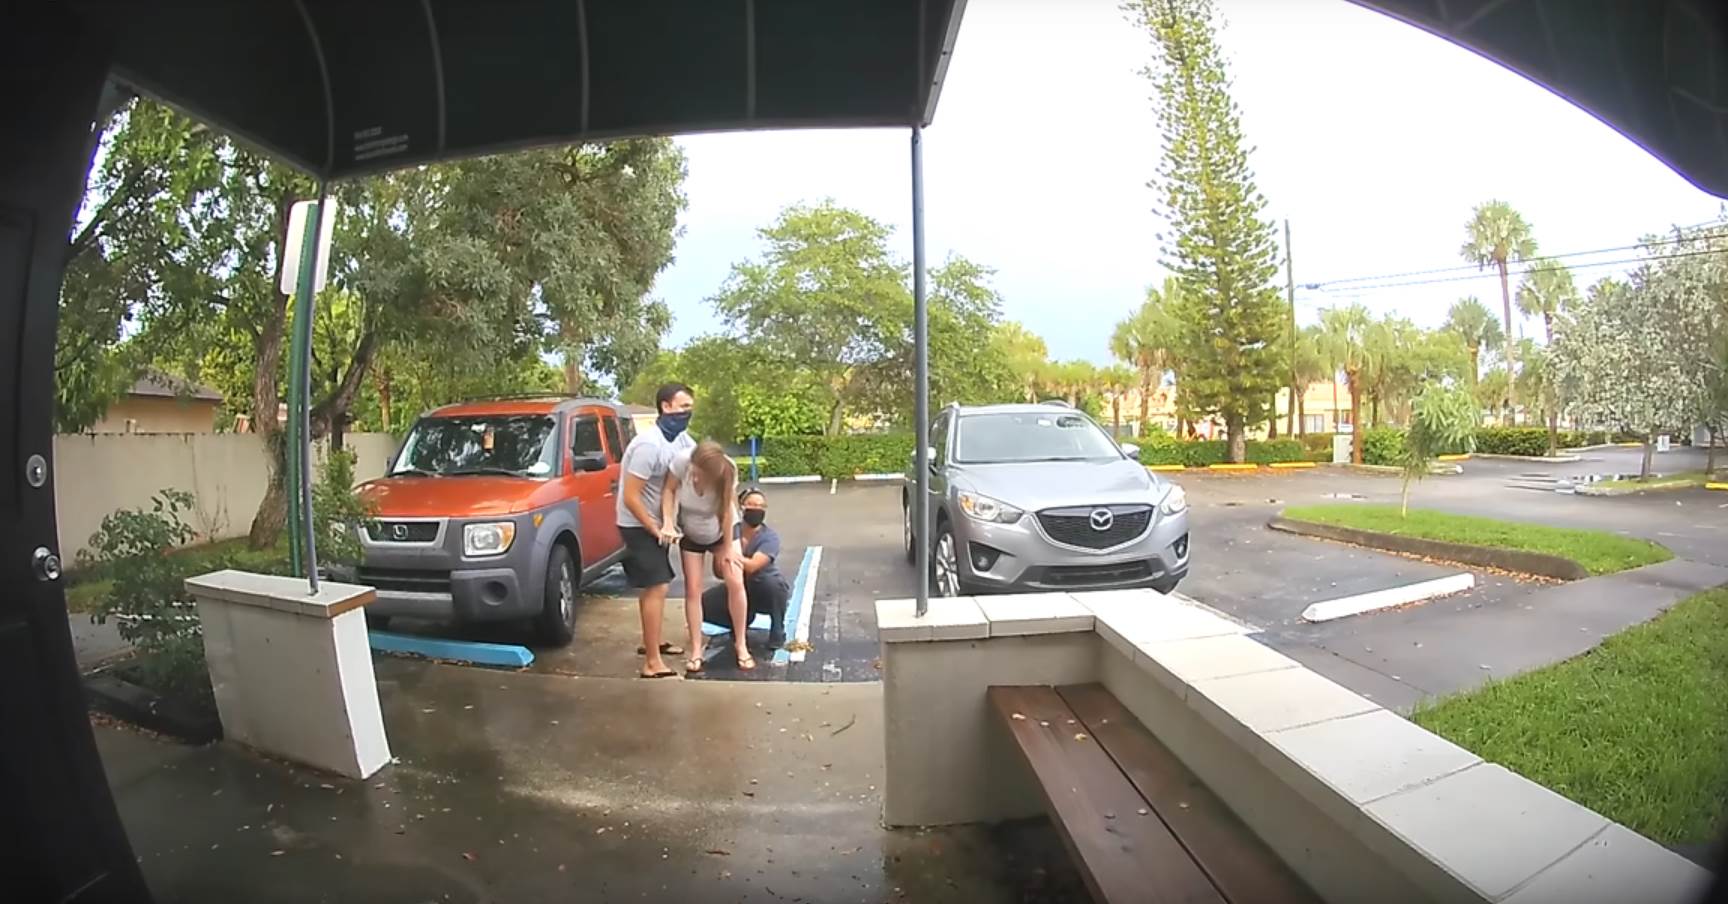  Florida-porodjaj-na-parkingu-video 